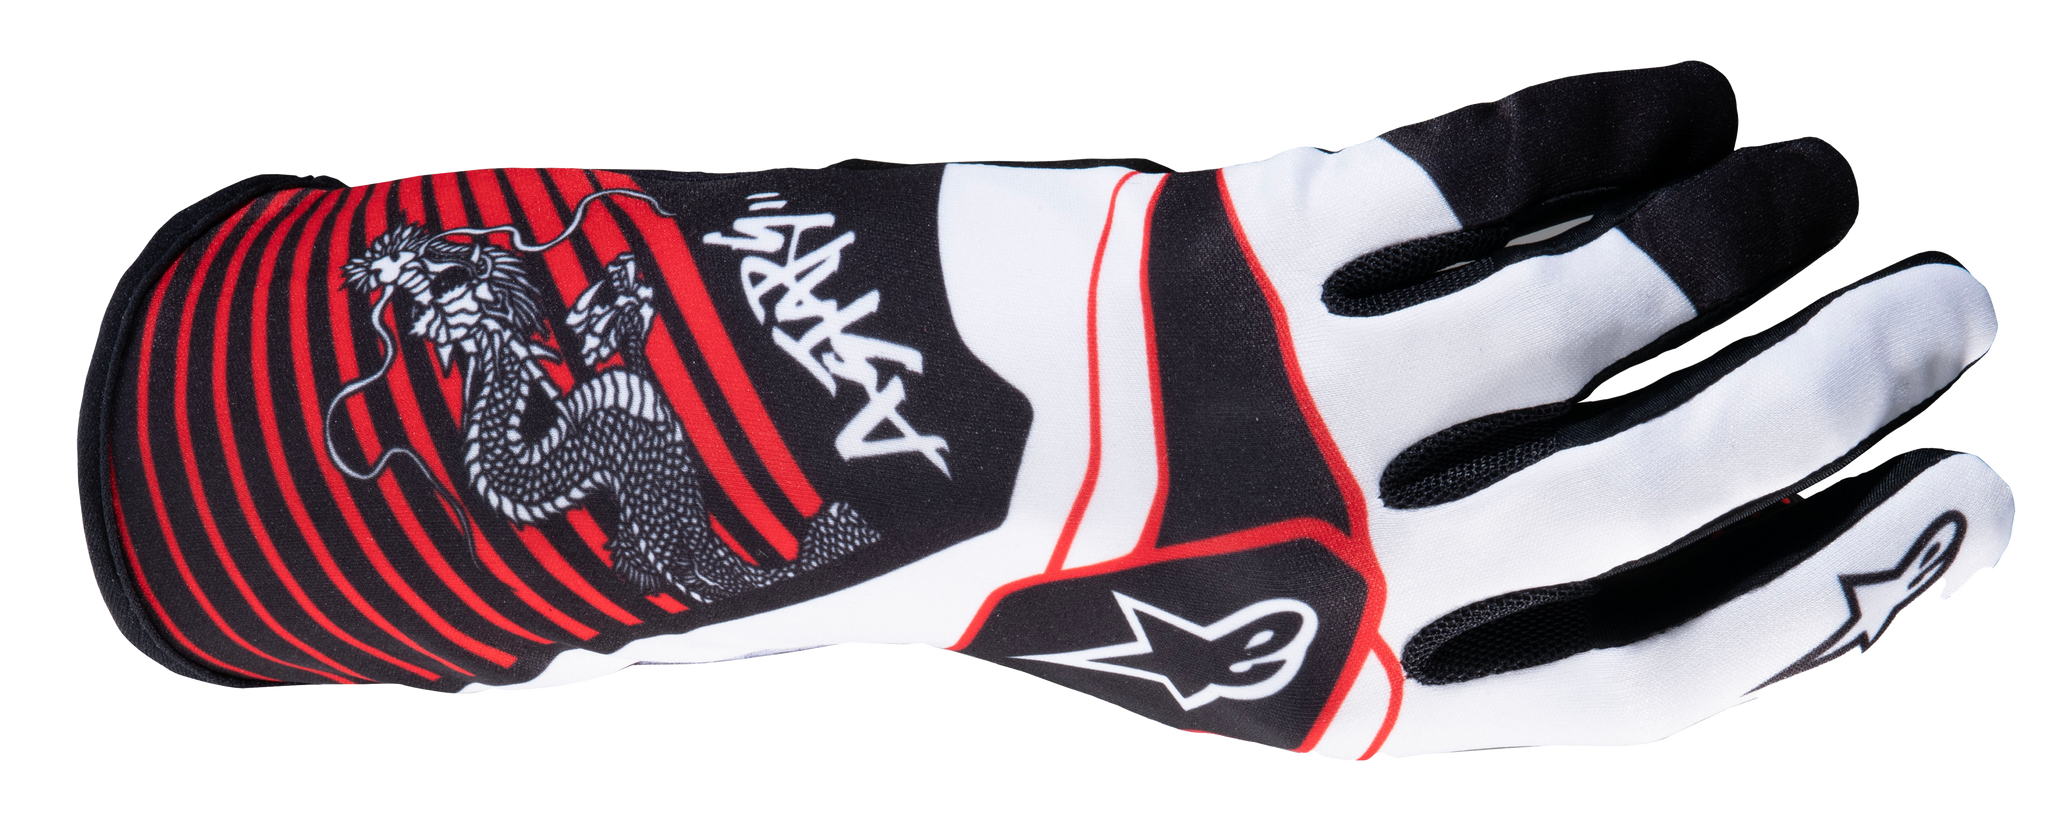 Limited Edition Tech-1 KRace V2 Kaze Gloves